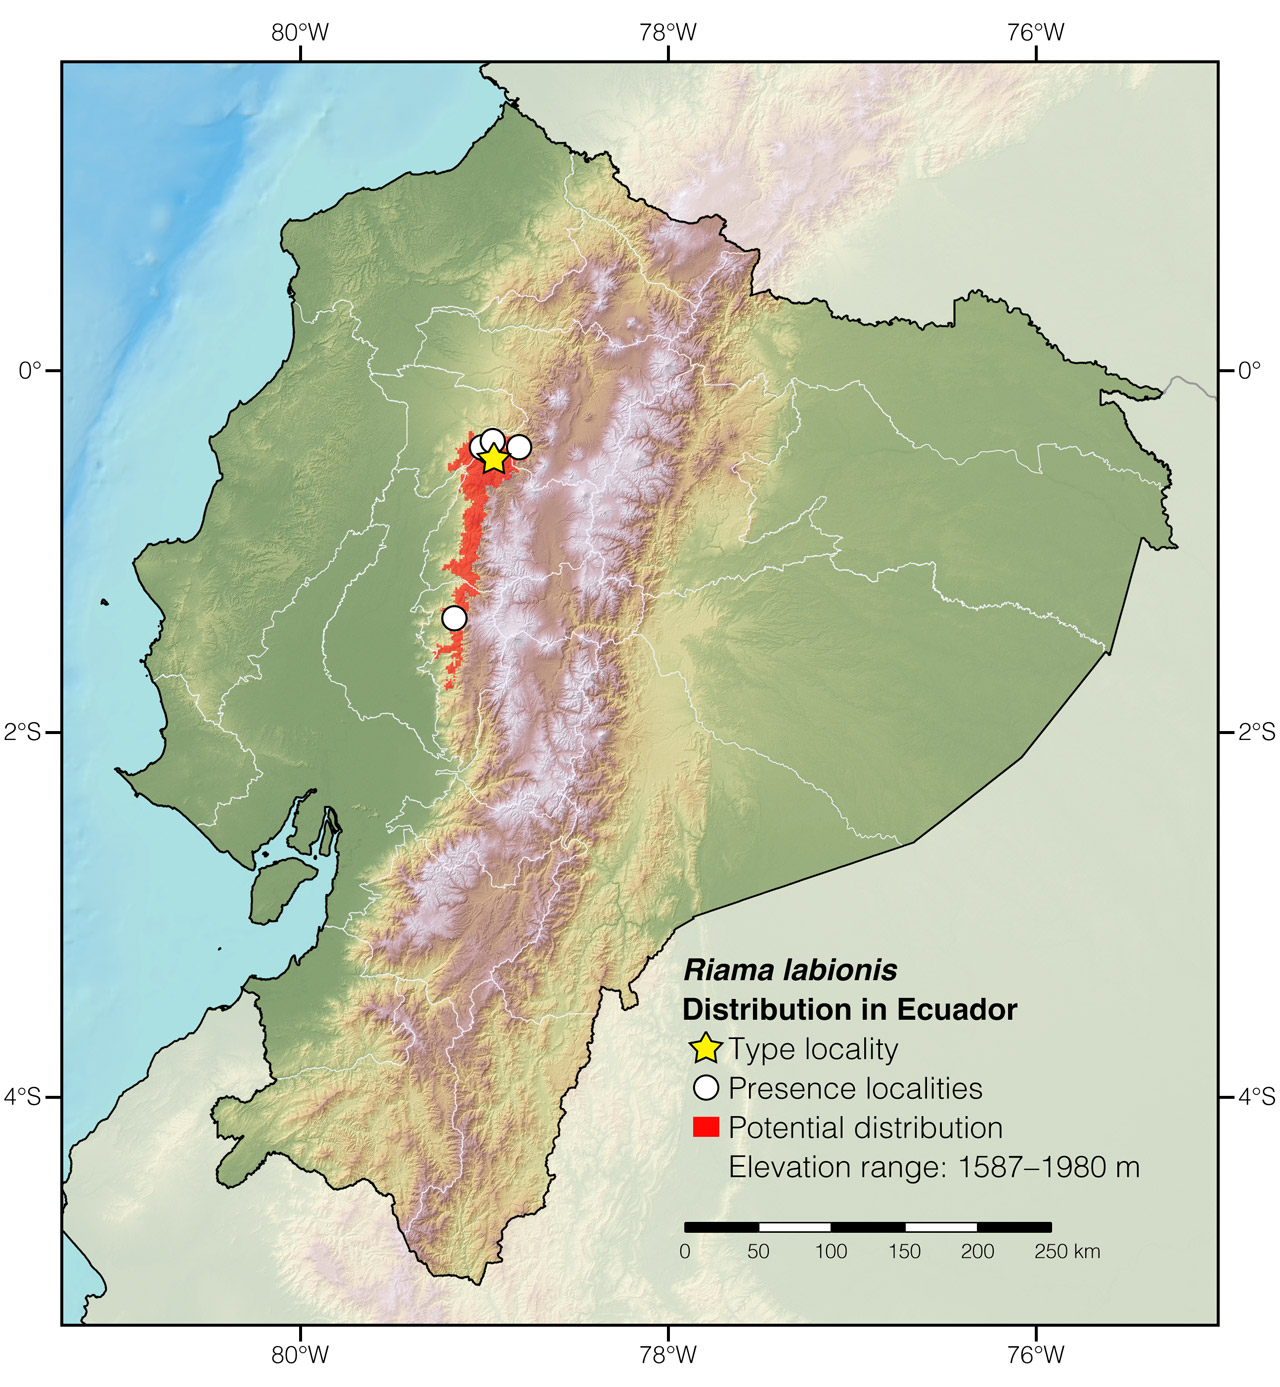 Distribution of Riama labionis in Ecuador